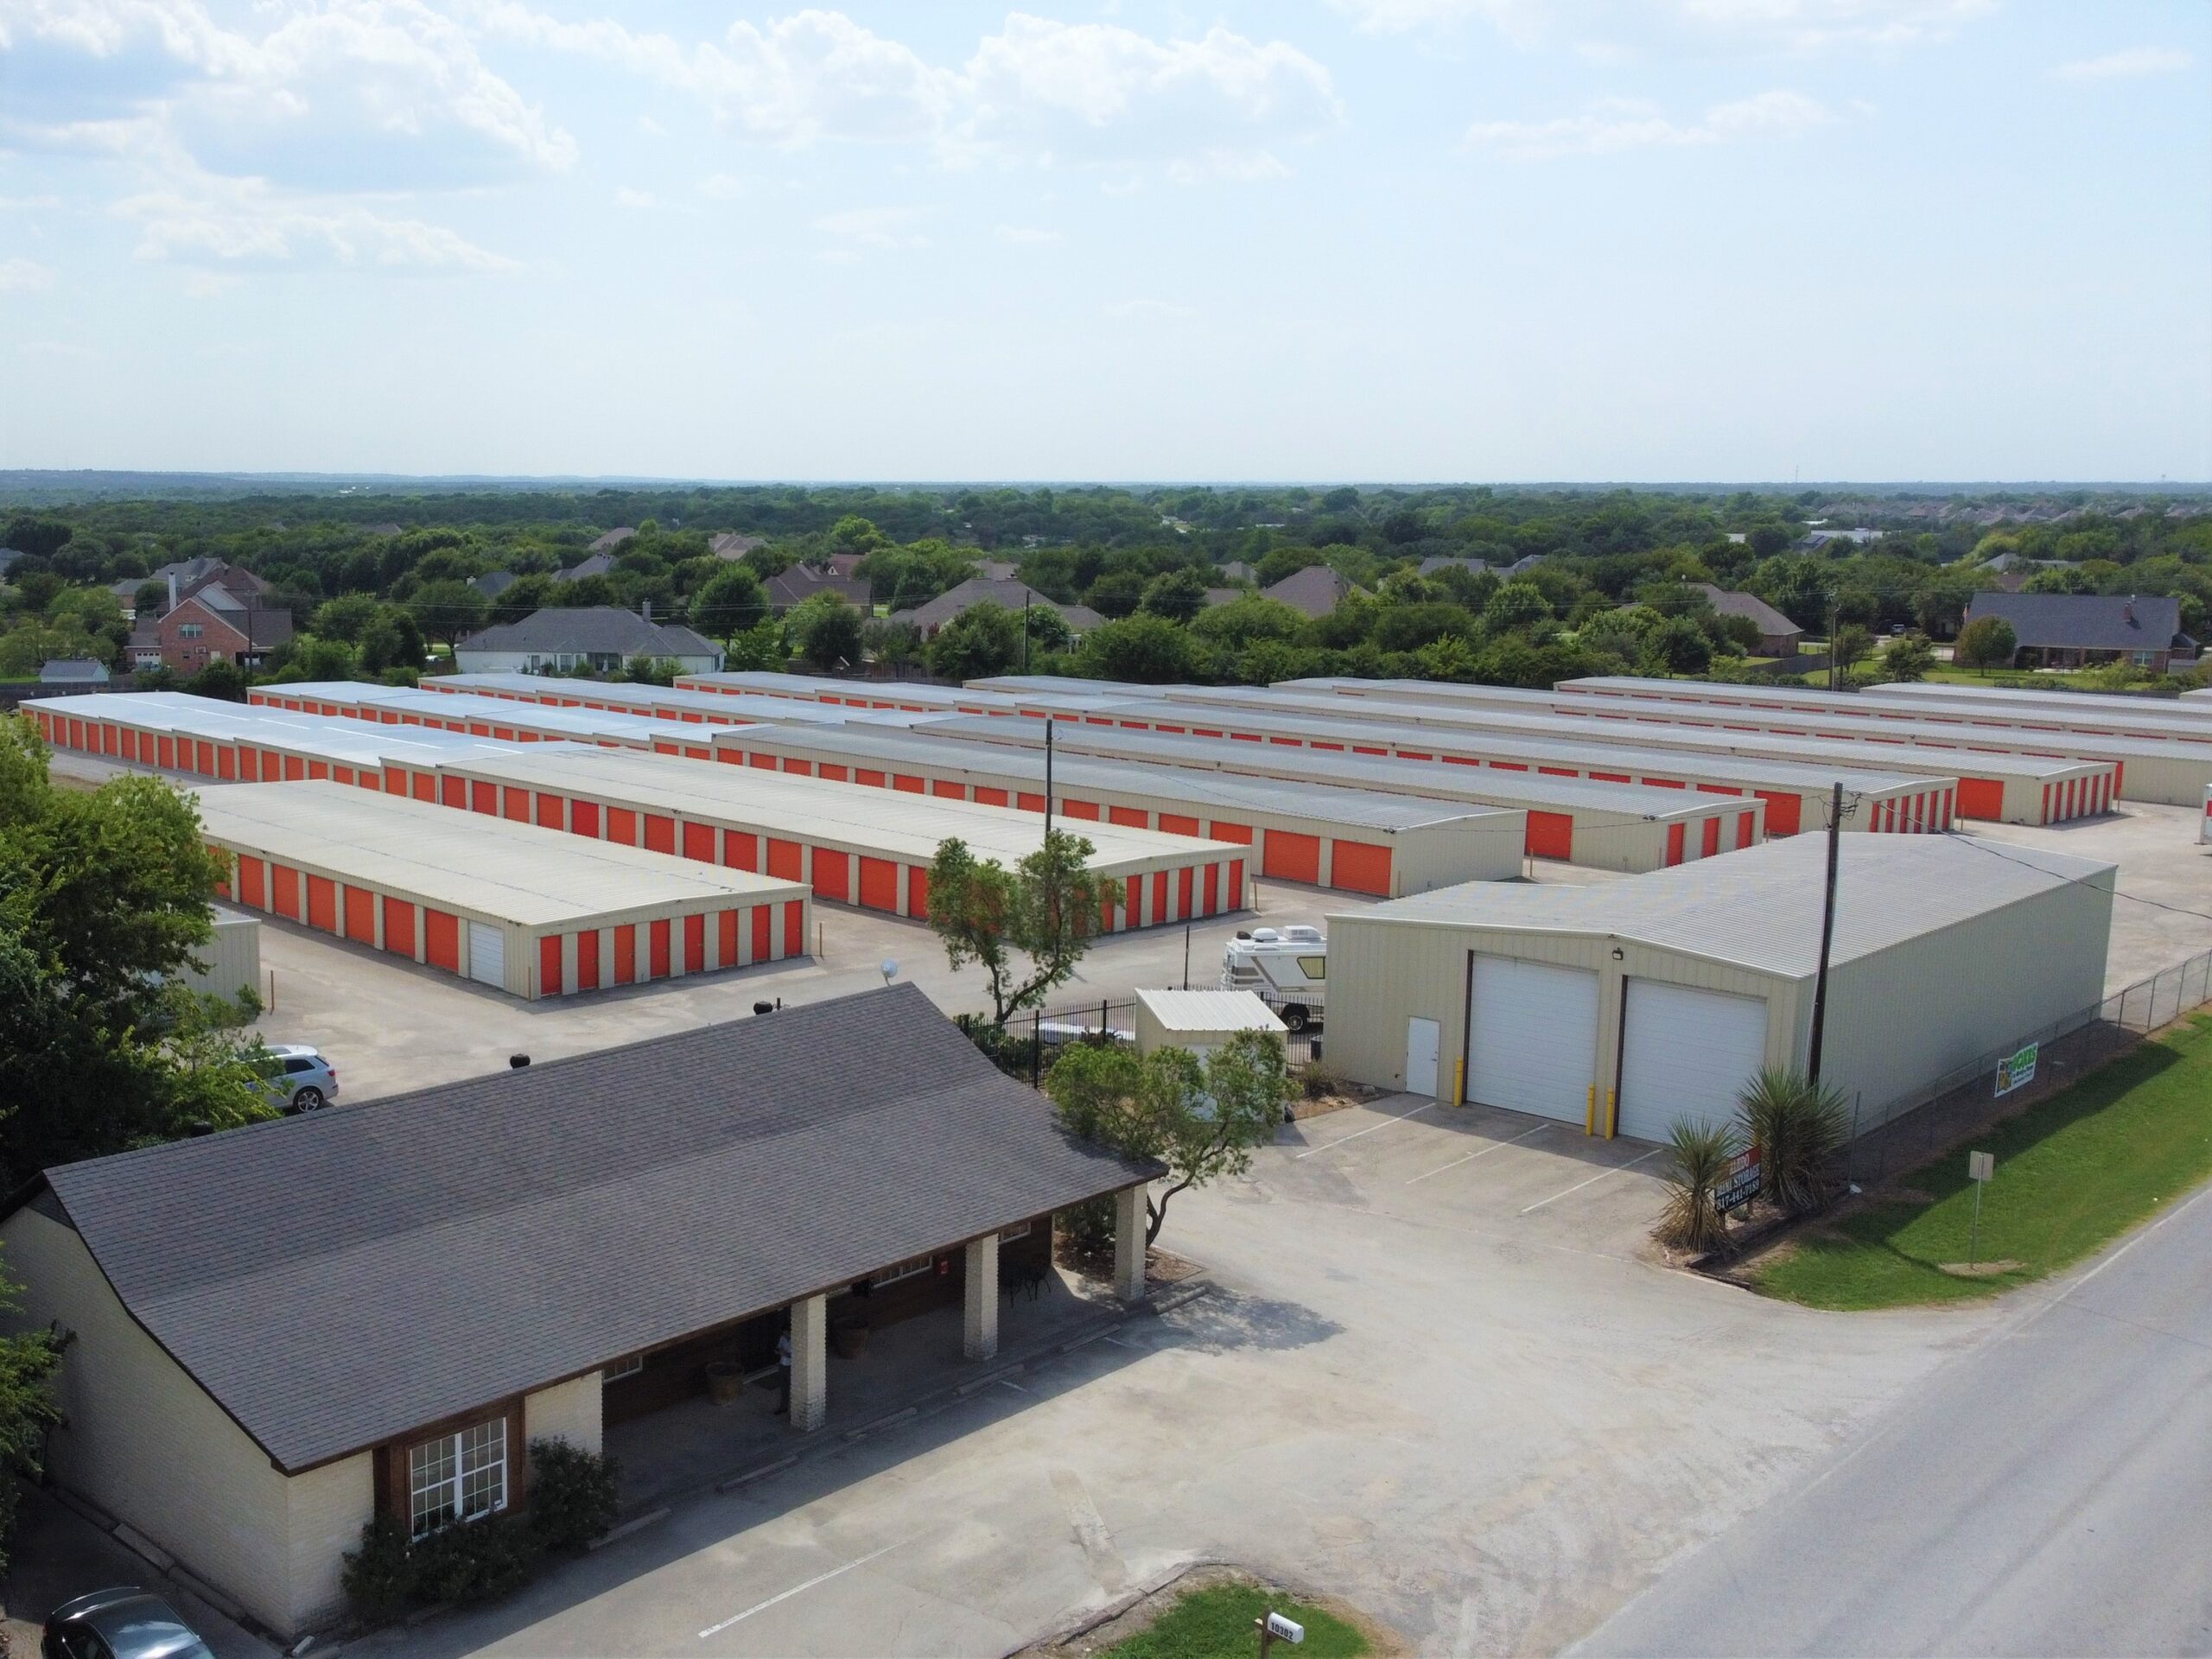 Aledo Mini Storage - Self Storage Facility For Sale in Texas by The Karr Self Storage Team